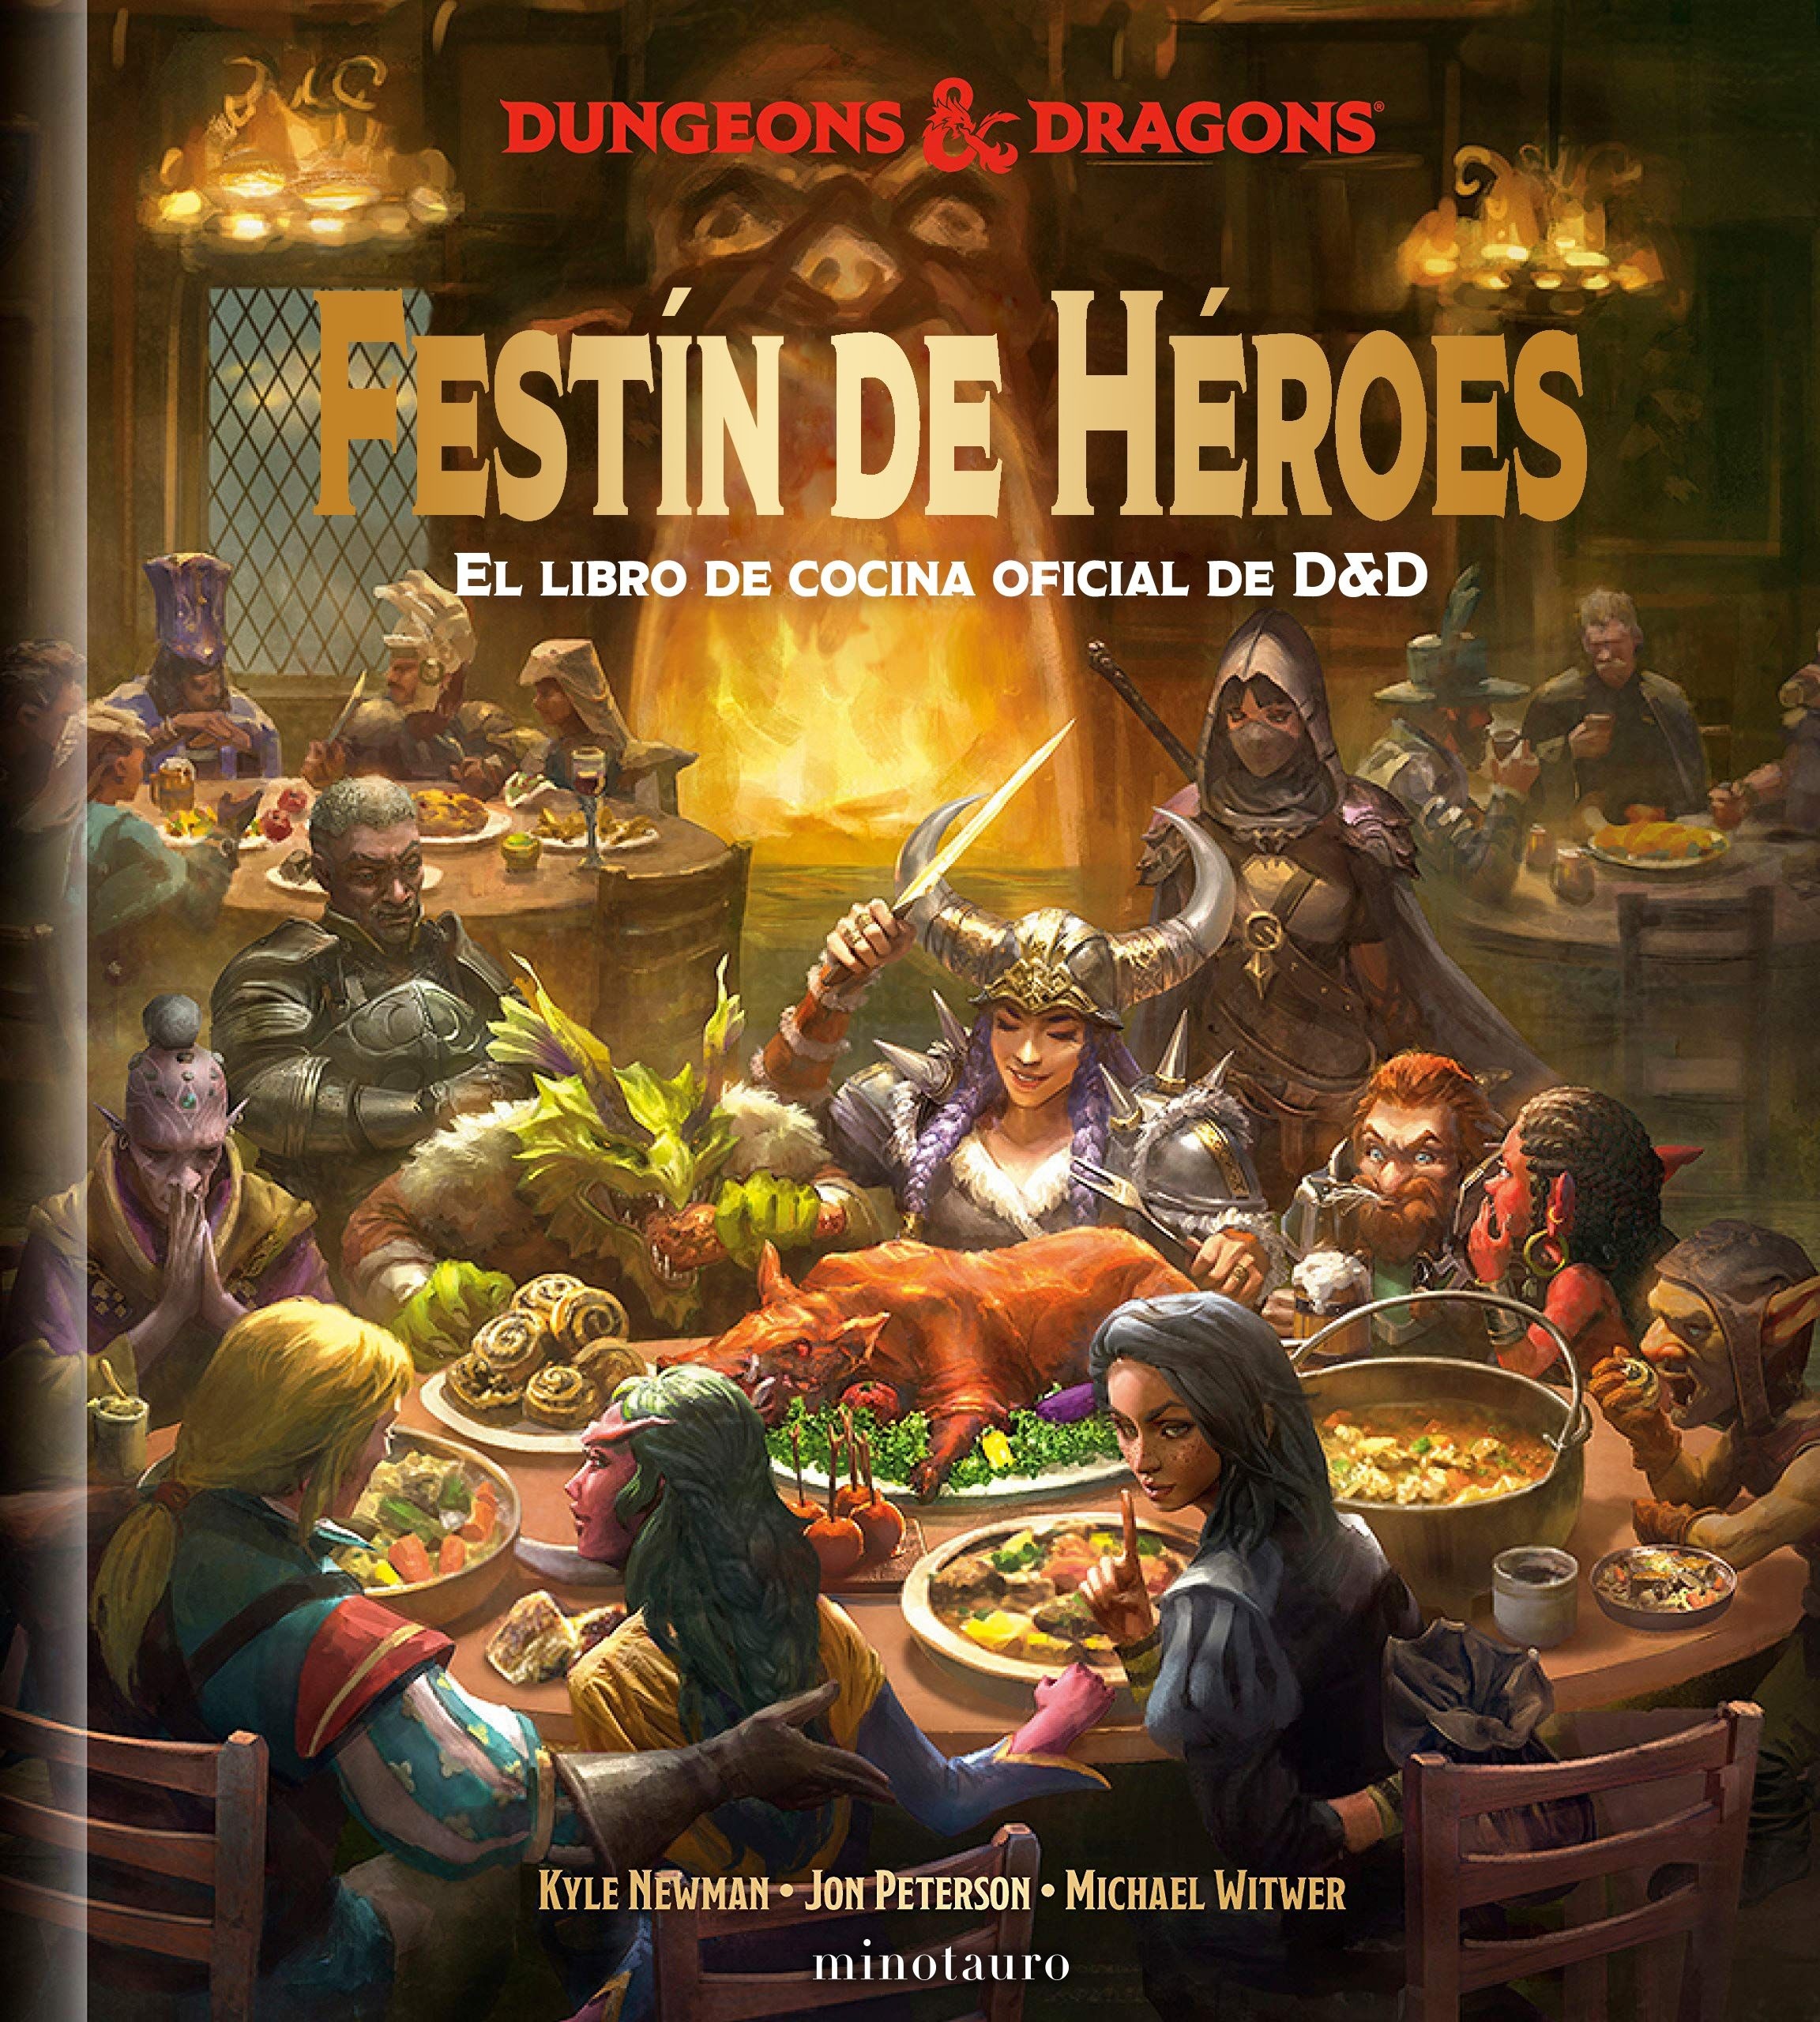 Festín de Héroes "El libro de cocina oficial de Dungeons & Dragons". 